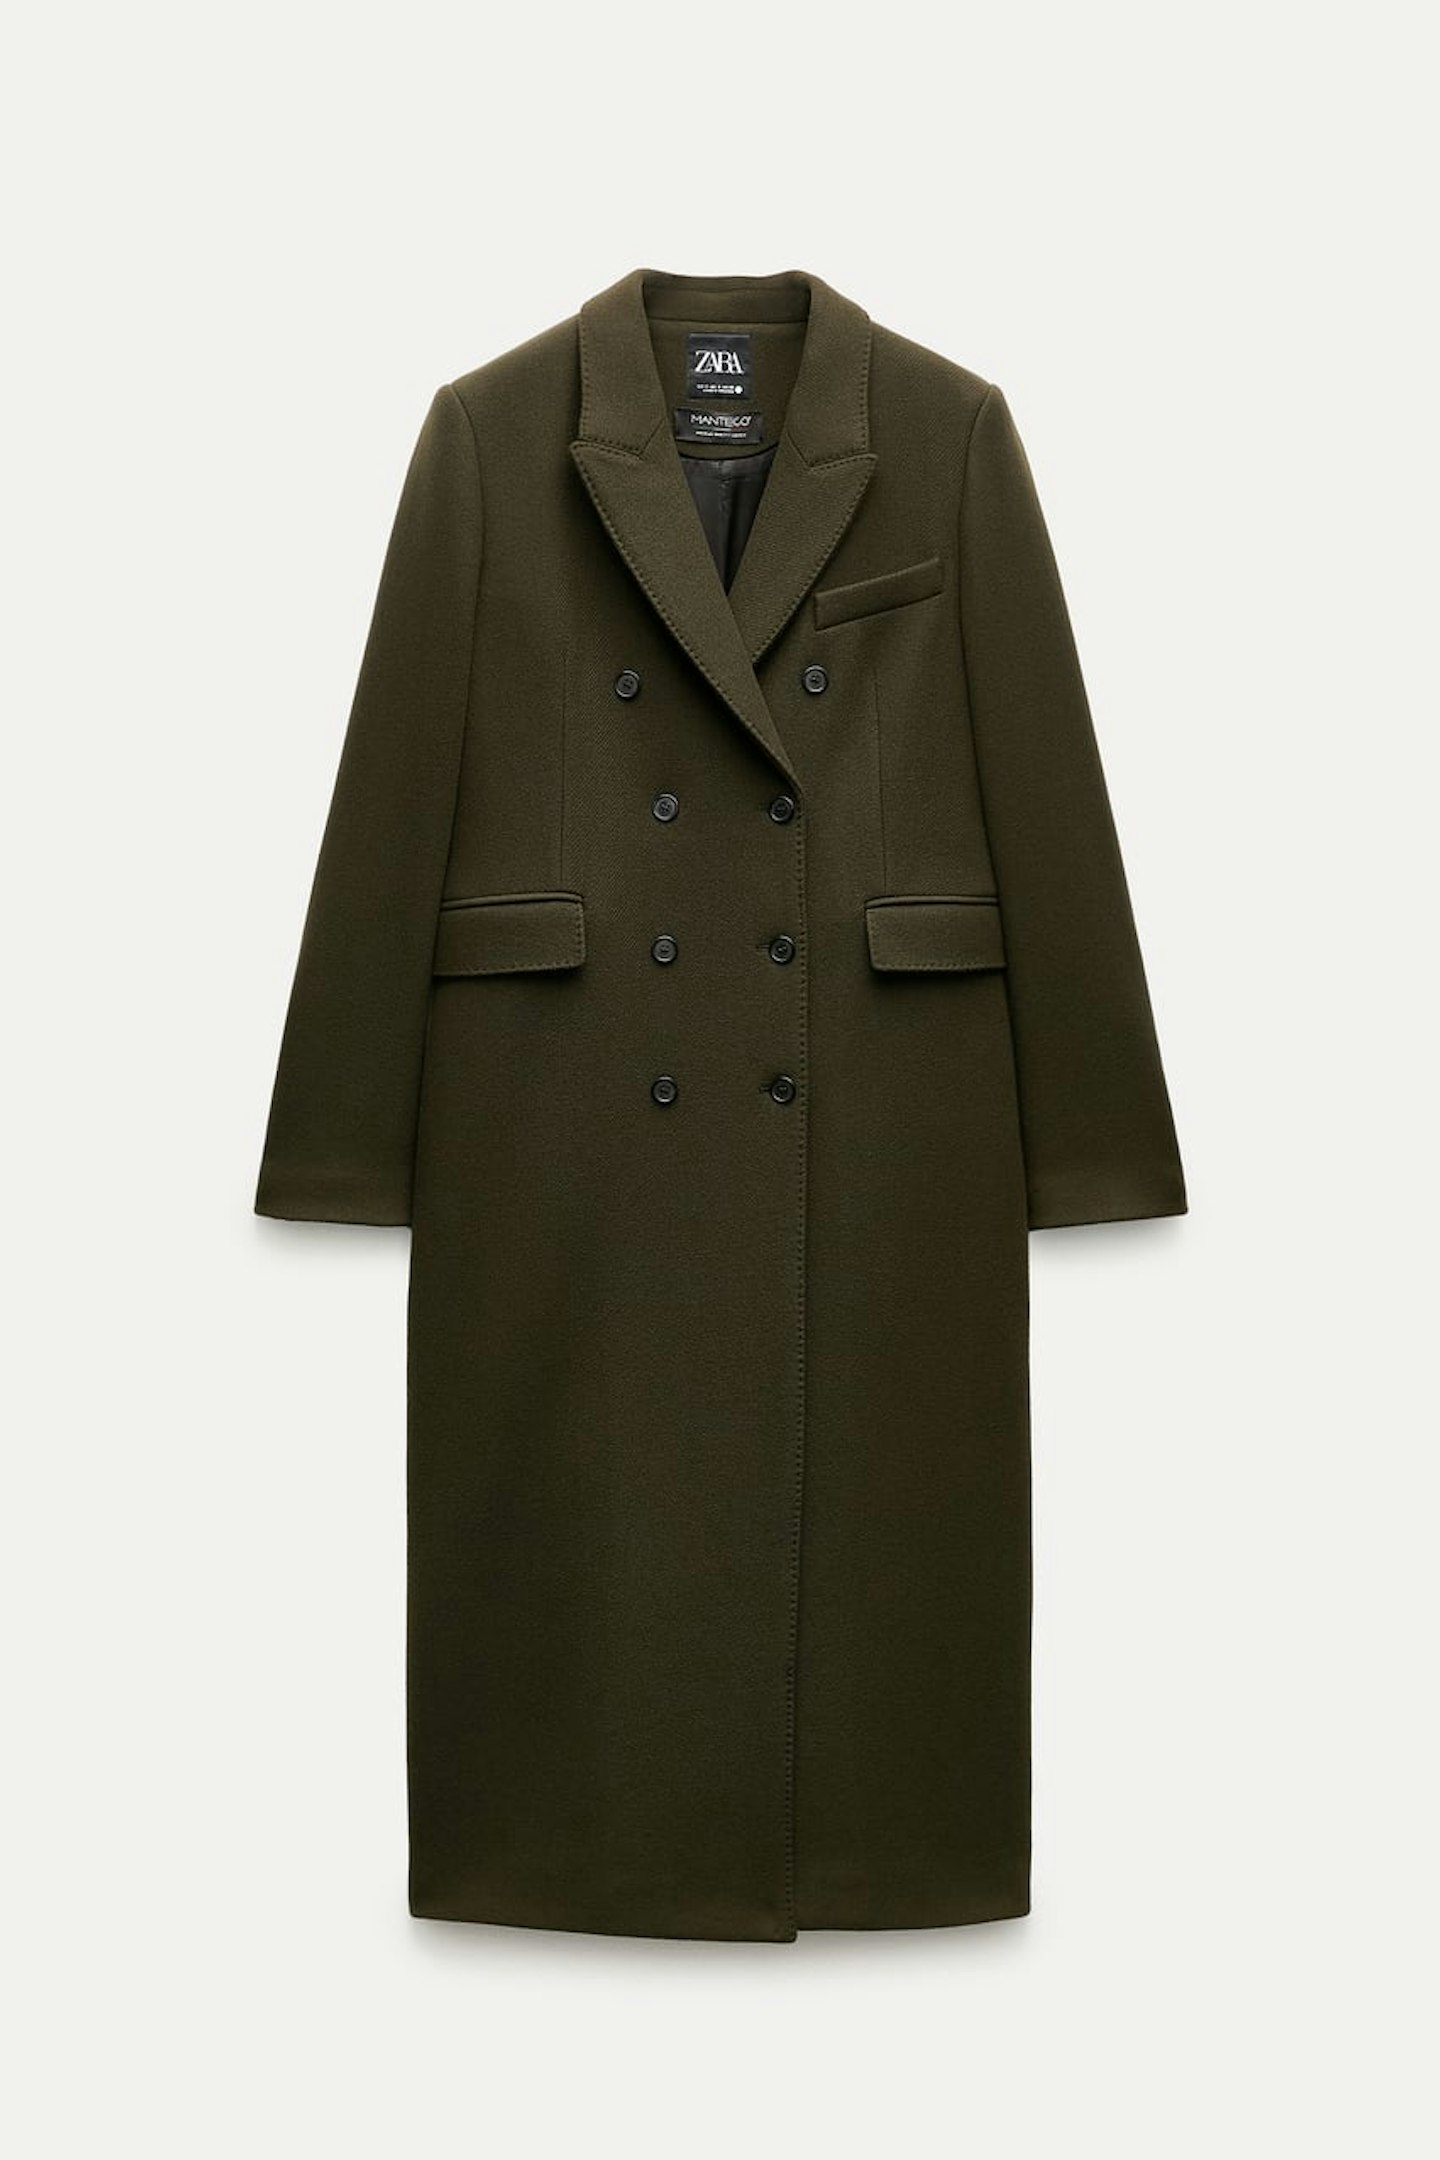 zara olive coat 